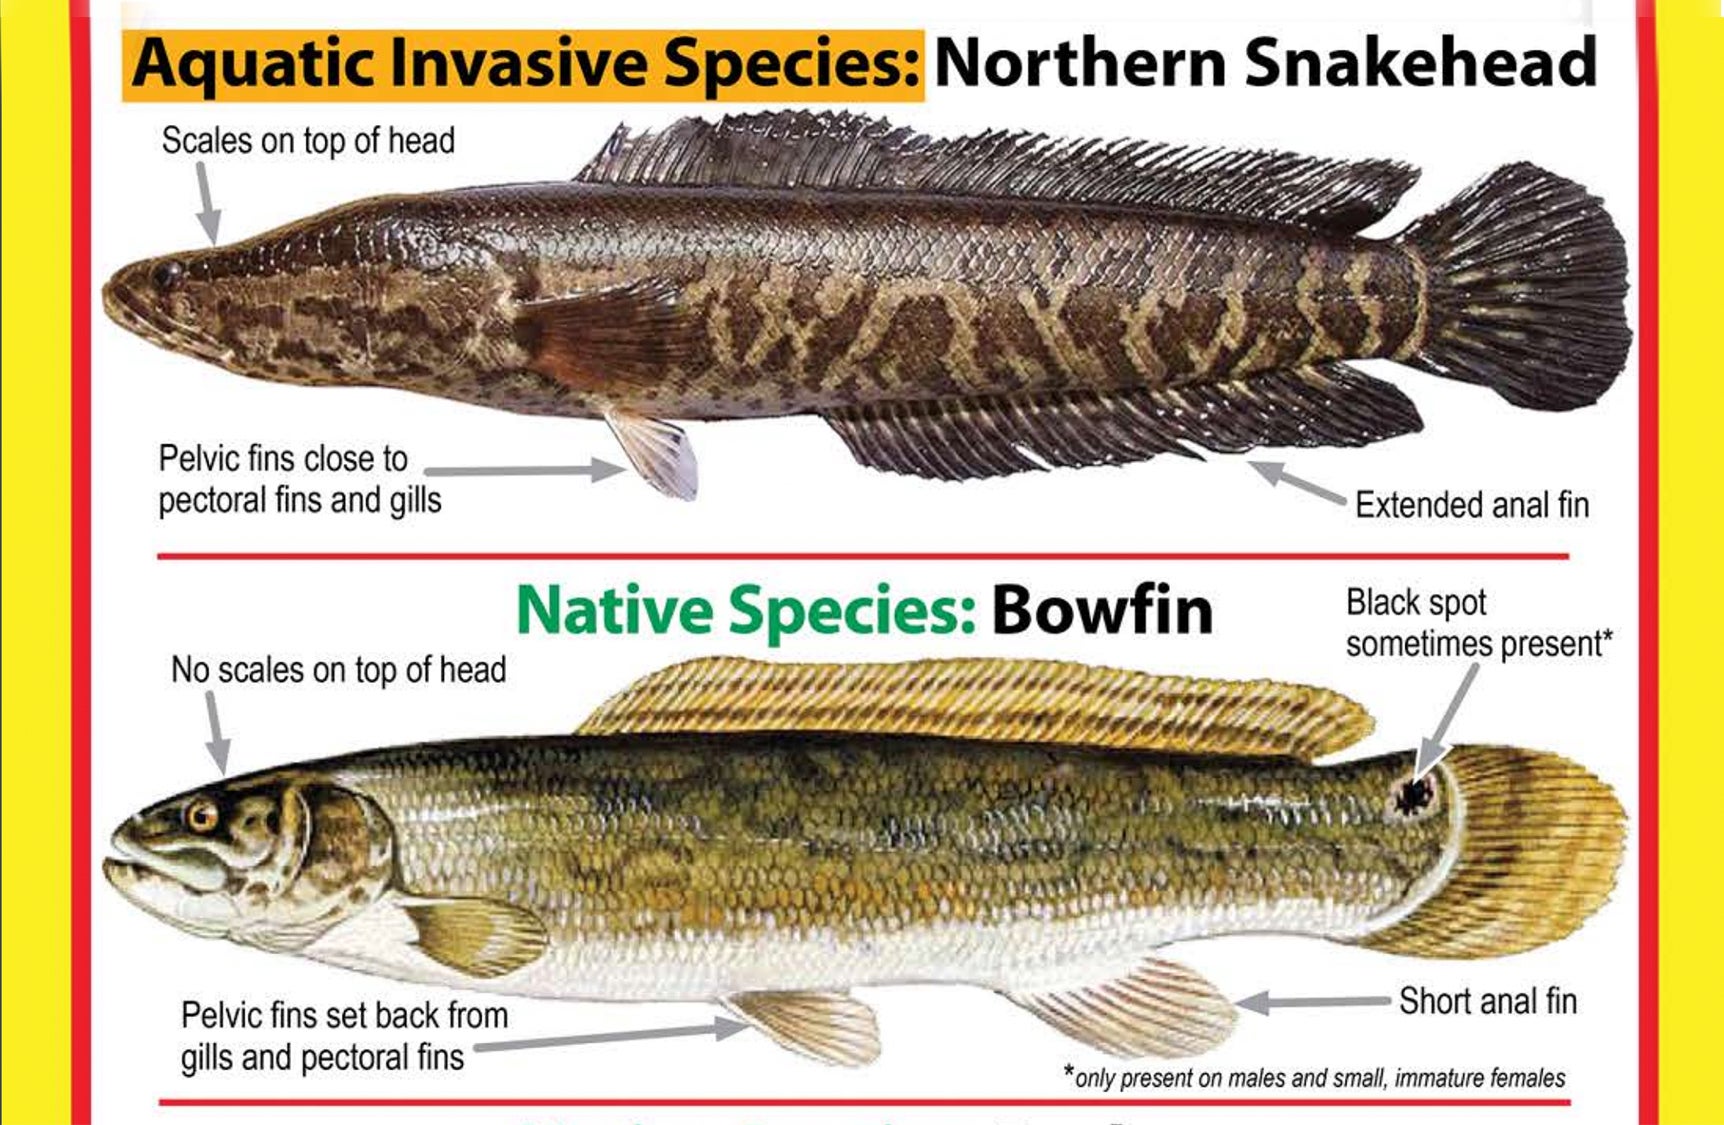 photo of bowfin vs snakehead